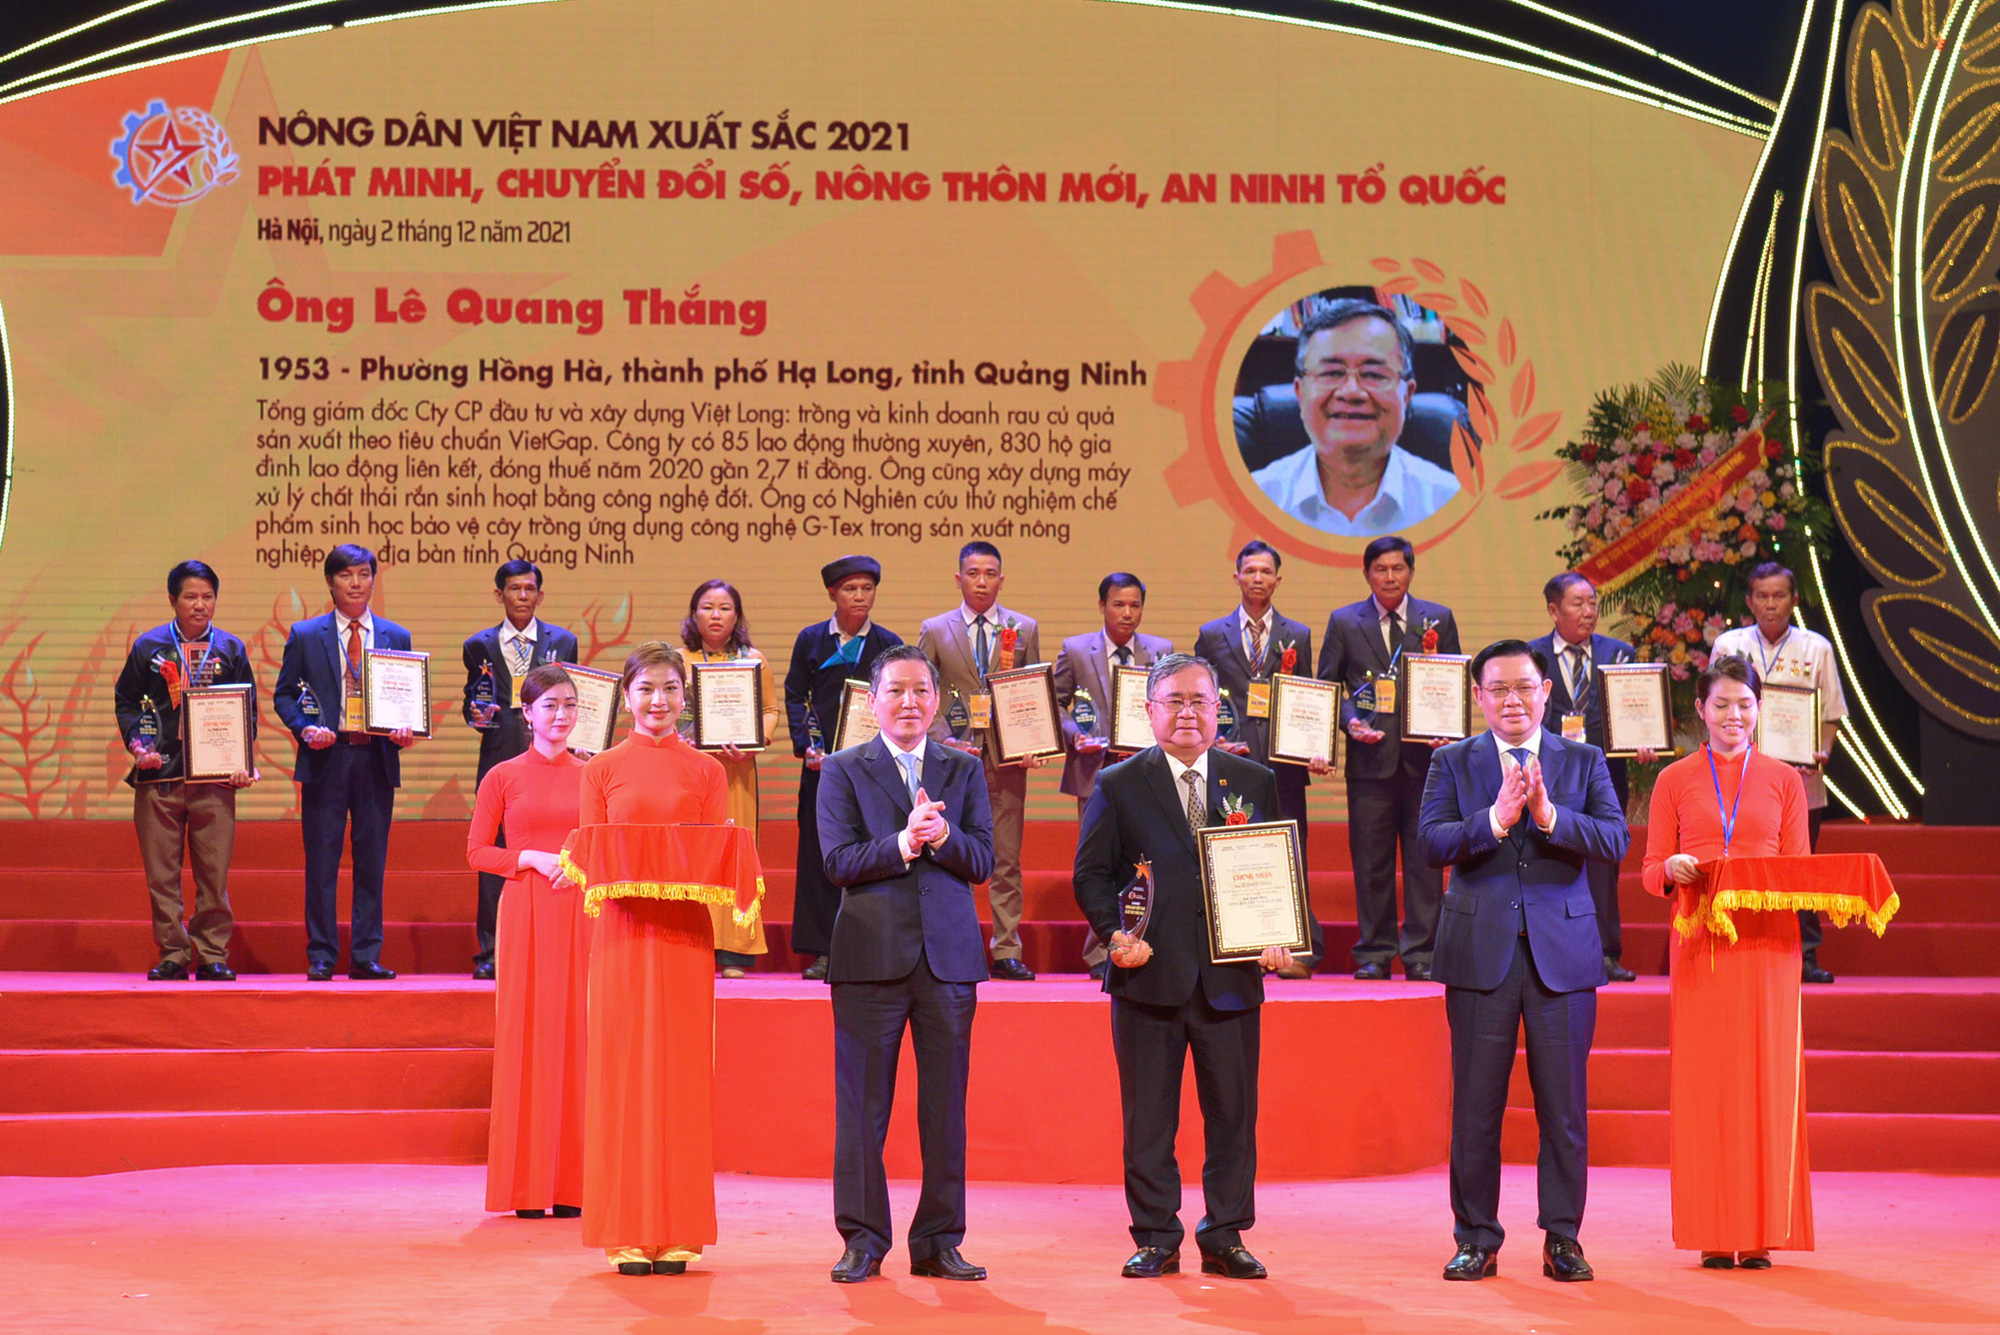 Trân trọng mời tham gia Chương trình Bình chọn và trao danh hiệu “Nông dân Việt Nam xuất sắc 2022”. - Ảnh 1.